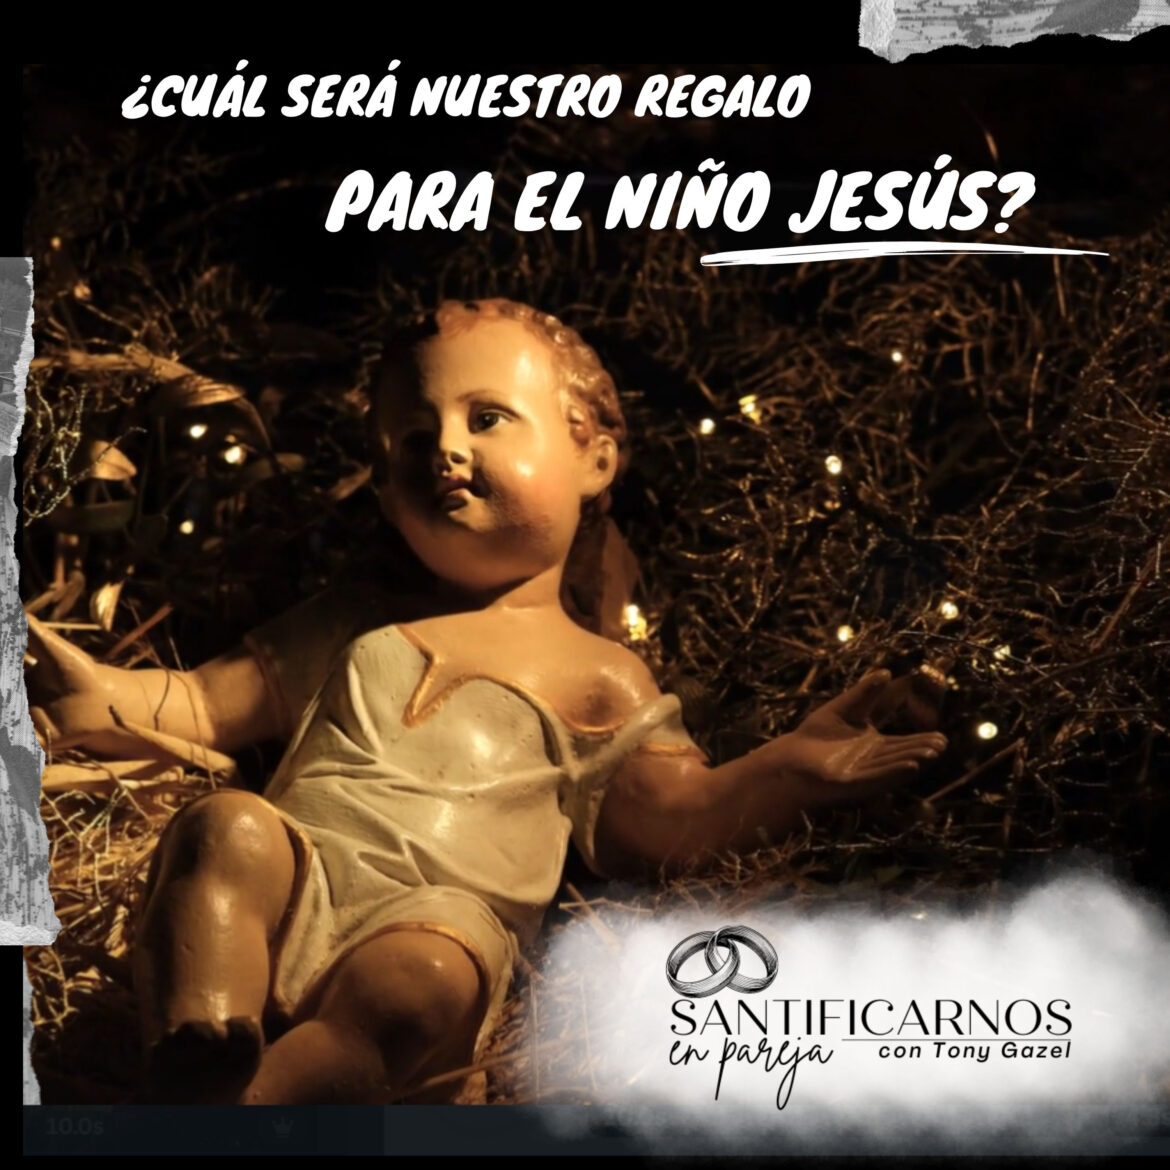 ¿Cuál será nuestro regalo para el niño Jesús?